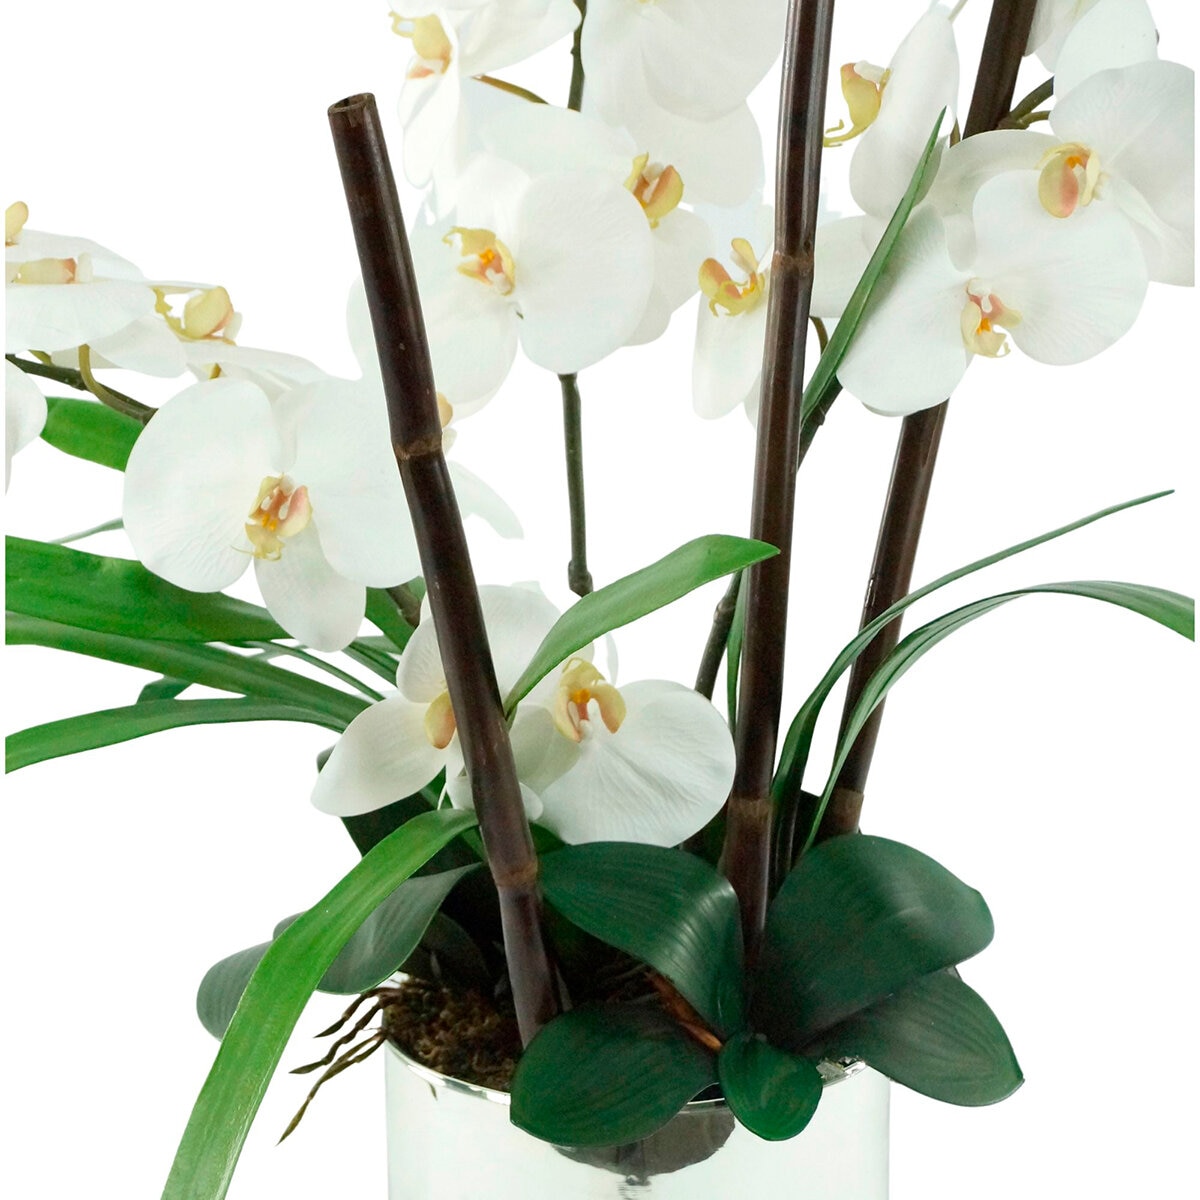 Orchidees Blanches- Arreglos Orquideas Artificiales - Arreglo de 5 varillas  en base de porcelana blanca Precio S/ 550 soles